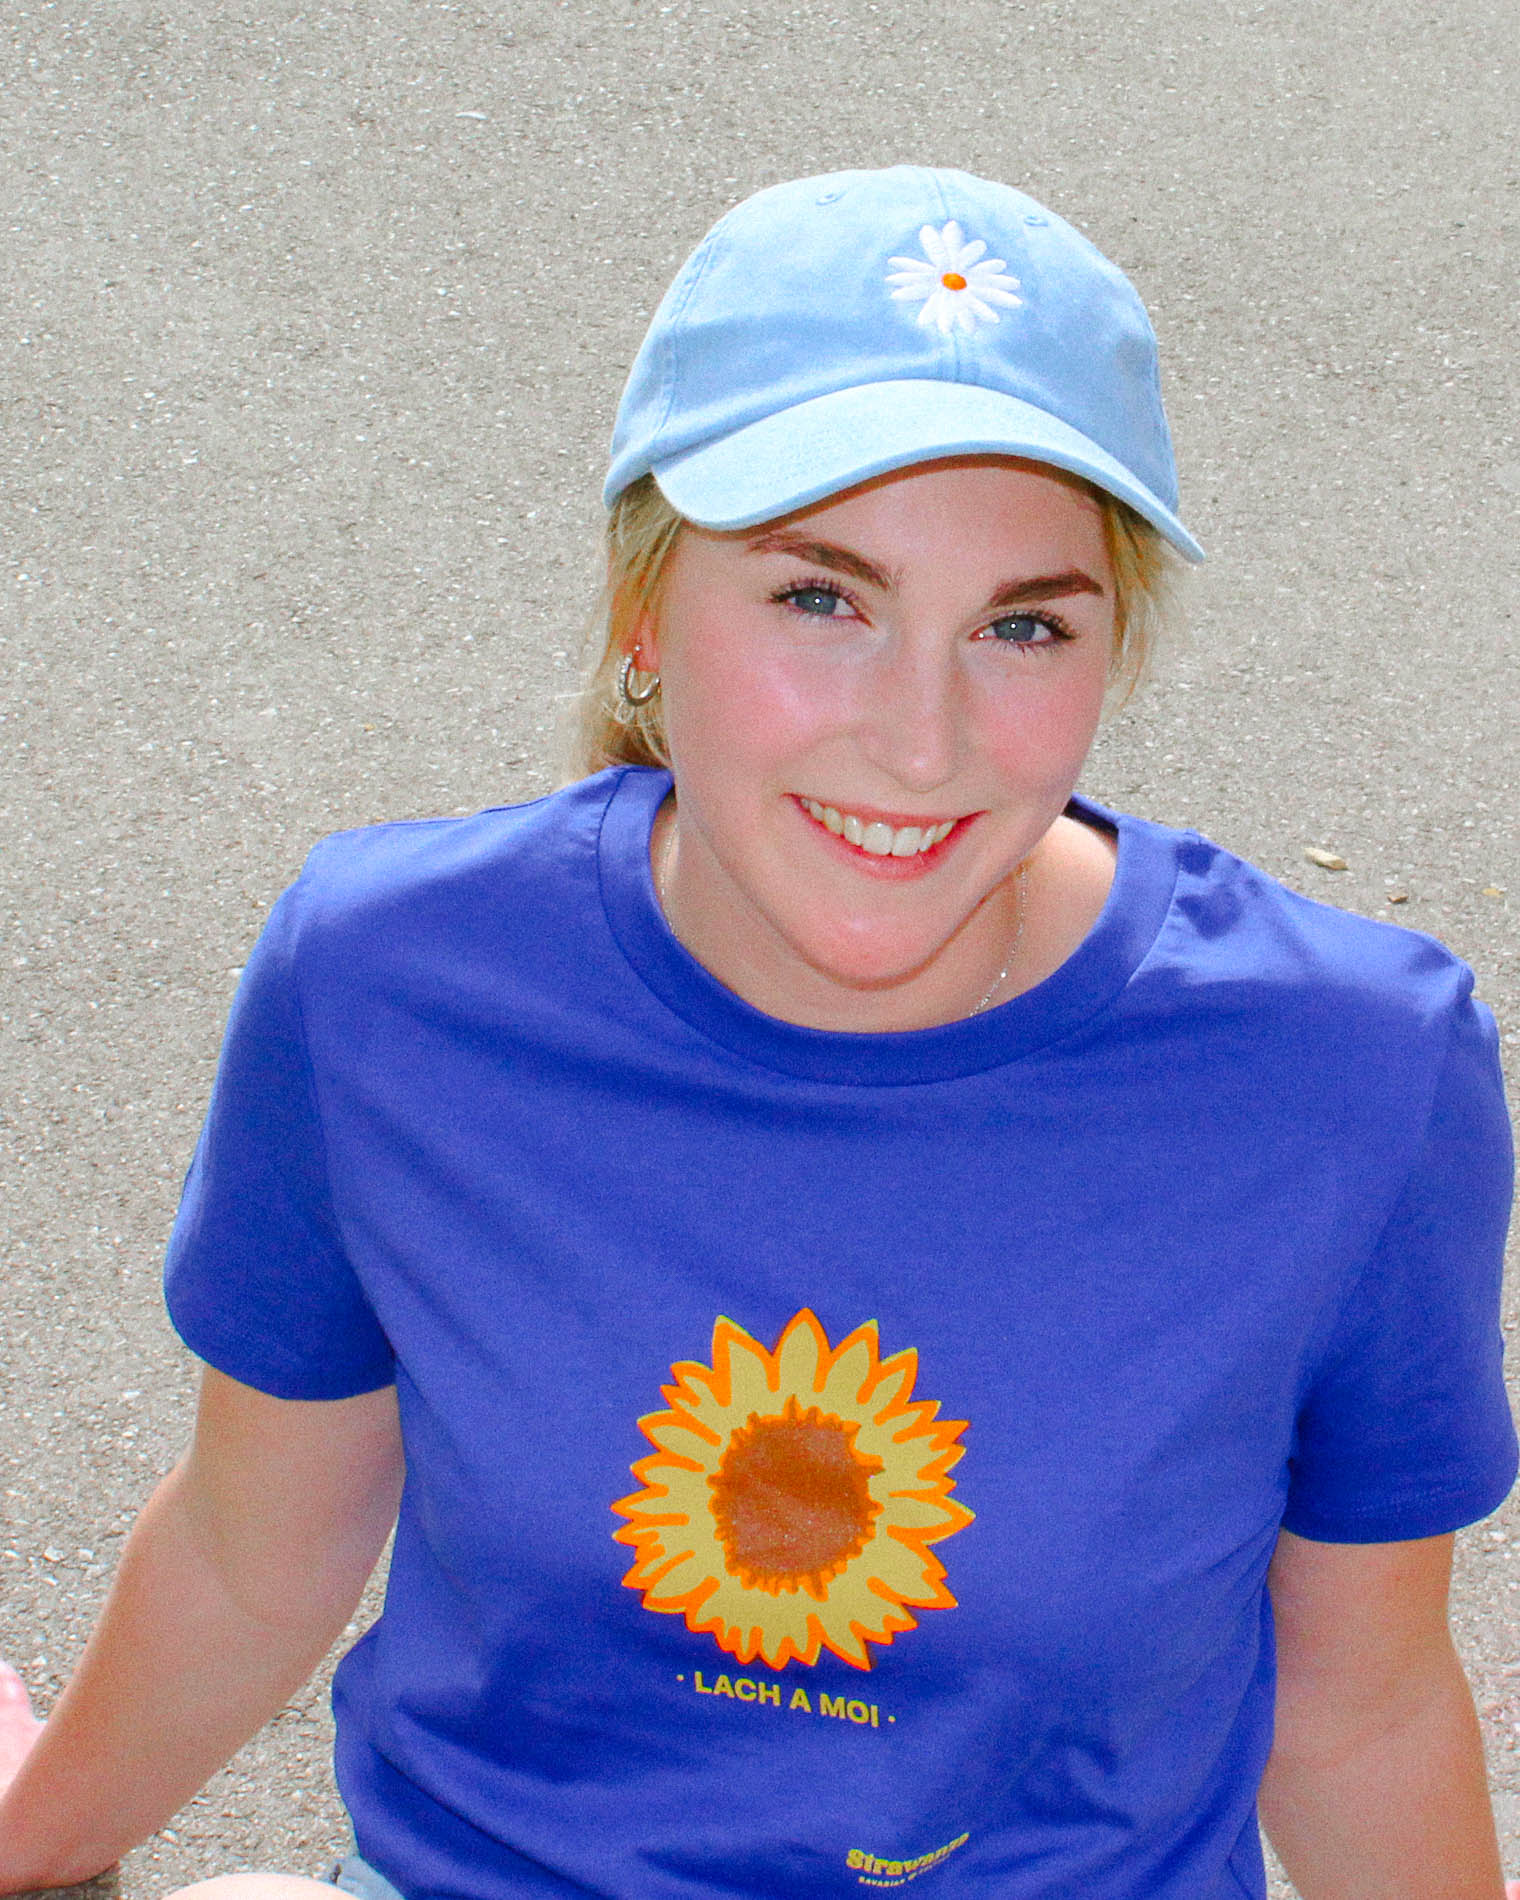 Ein weibliches Model trägt ein blaues T-Shirt mit einer Sonnenblume und einem gelben 